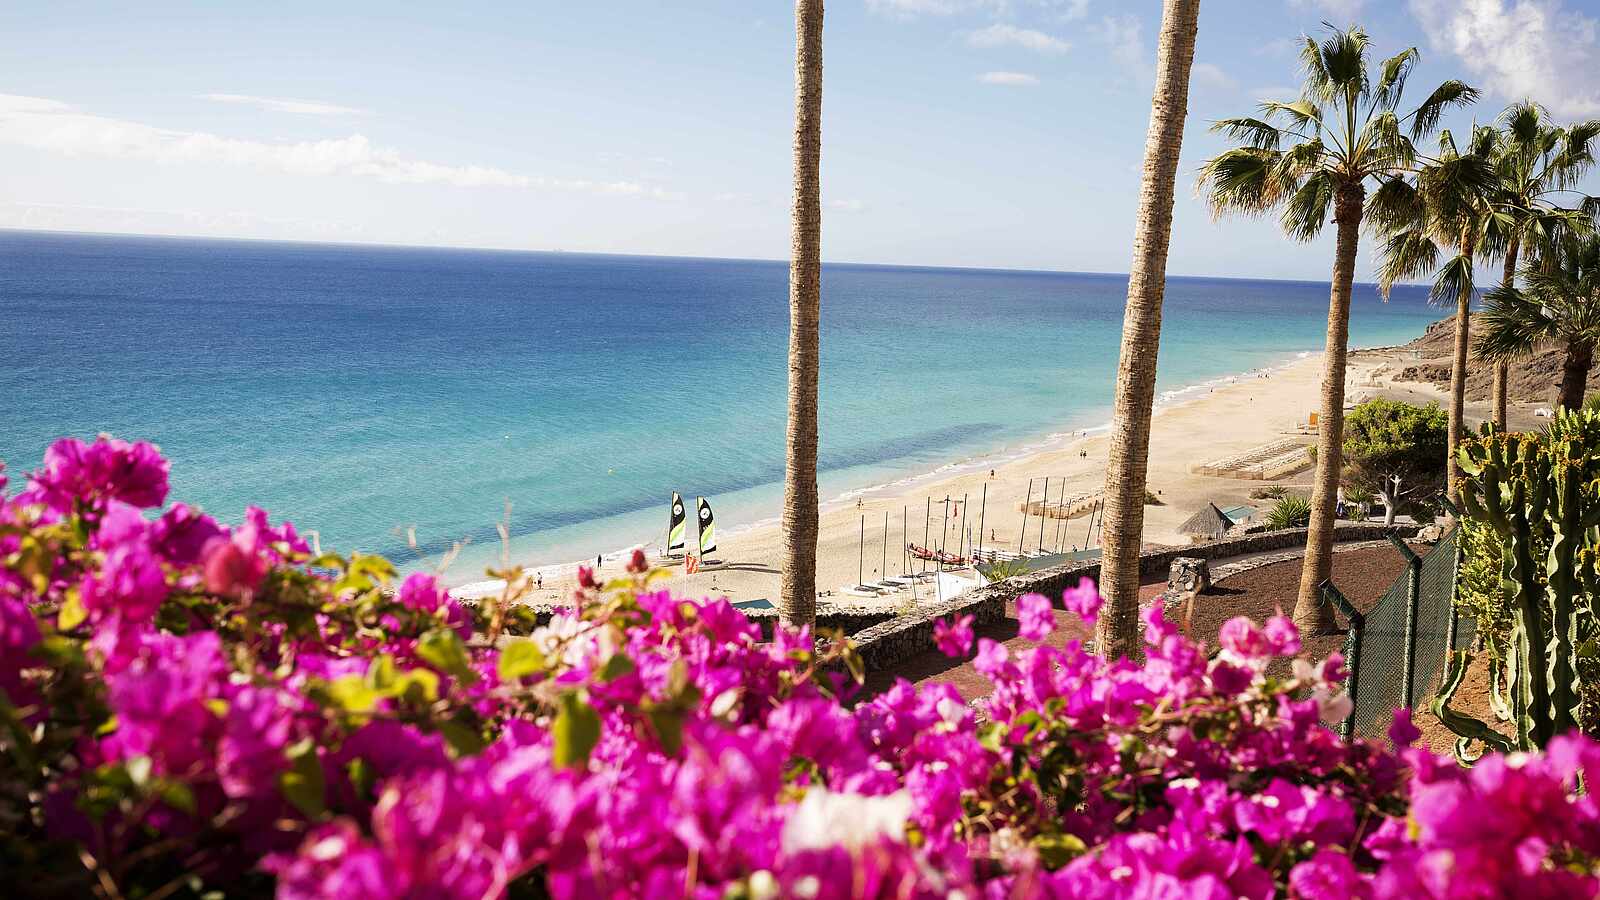 Klippe mit Blumen, Palmen und Ausblick auf den Strand und das Meer